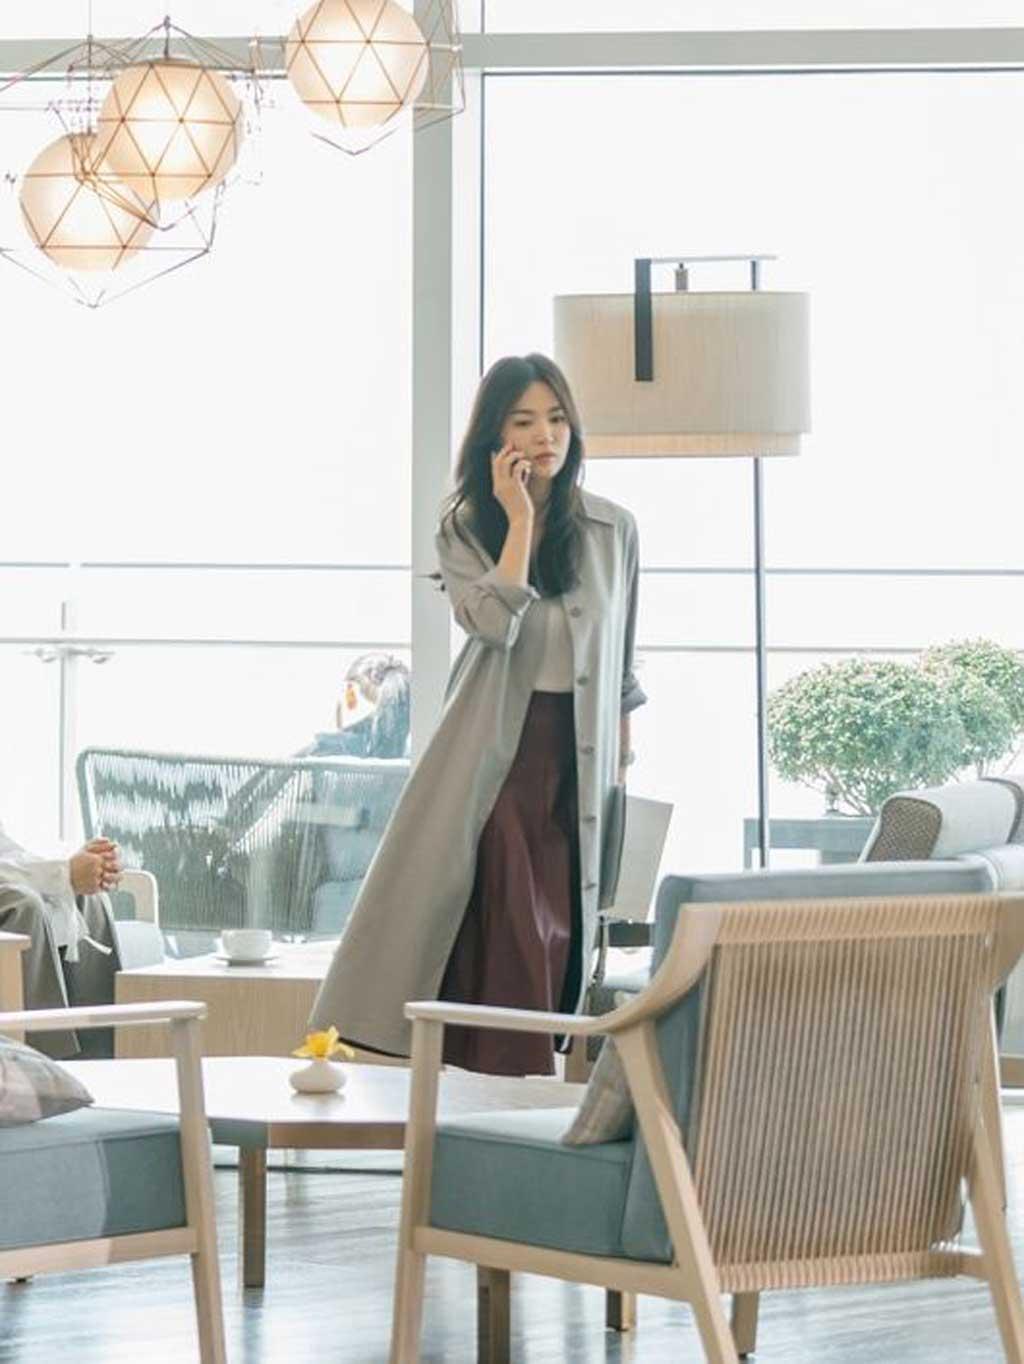 Phong cách thời trang công sở được Song Hye Kyo khai thác triệt để